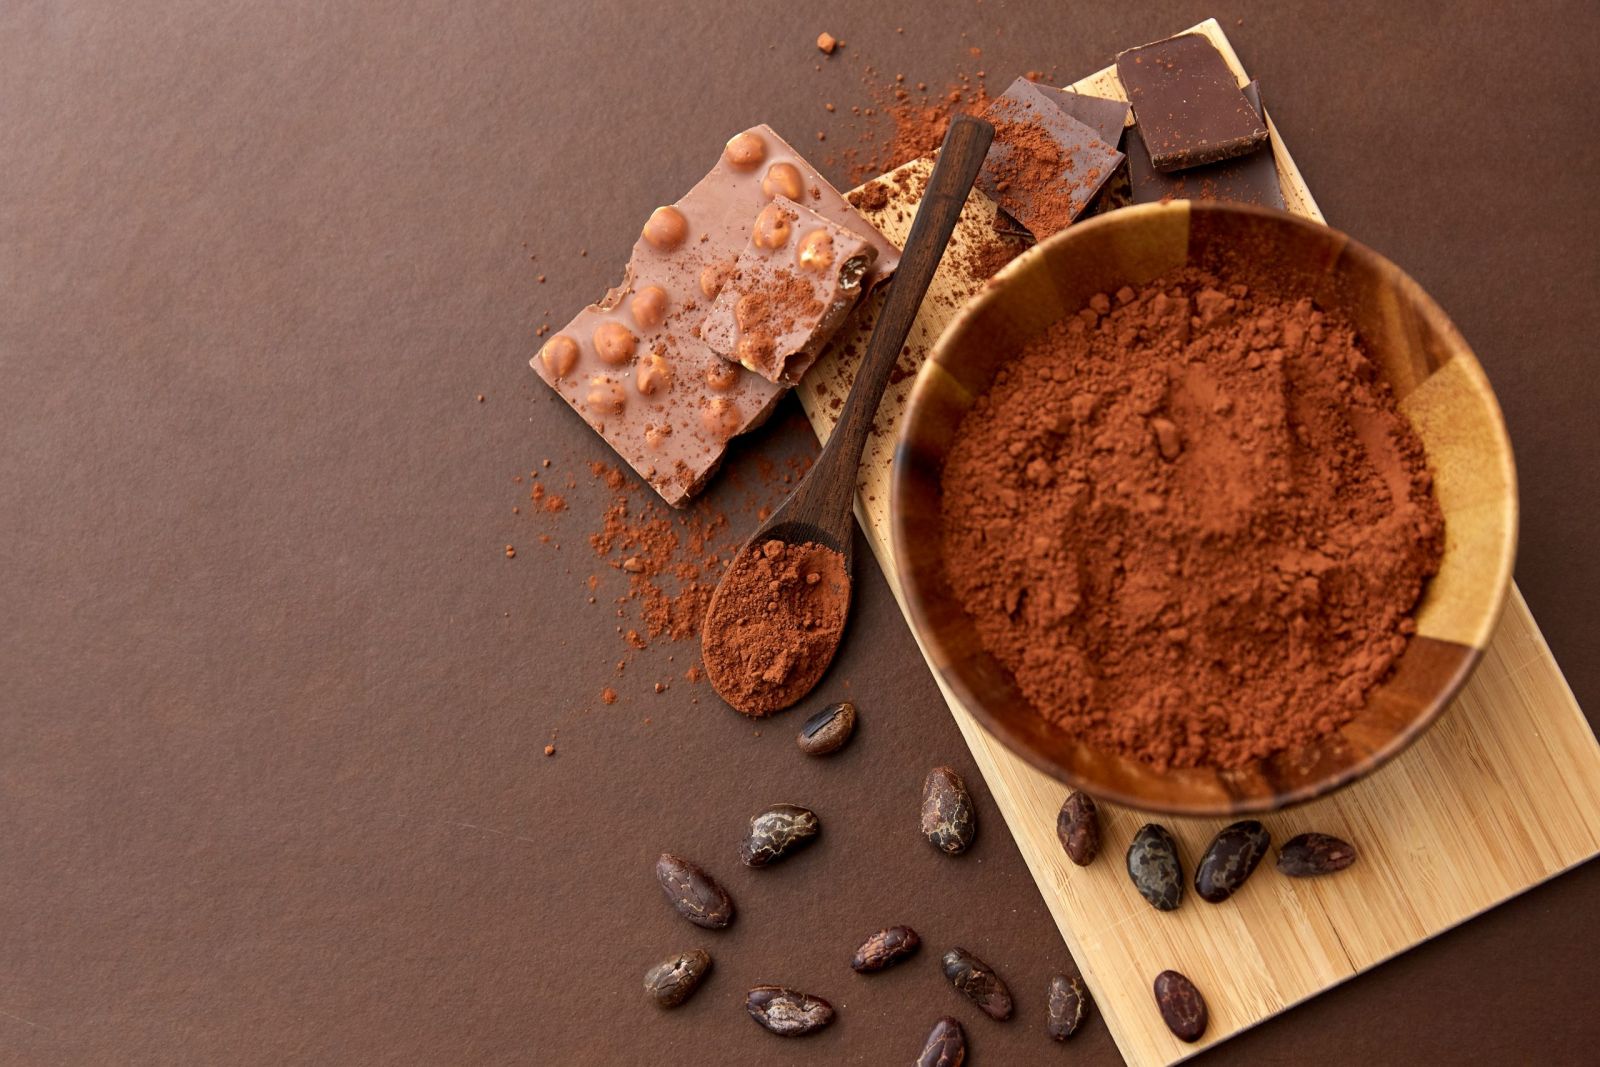 Công ty nào sản xuất Cacao và Chocolate  cho người nước ngoài uy tín hiện nay?